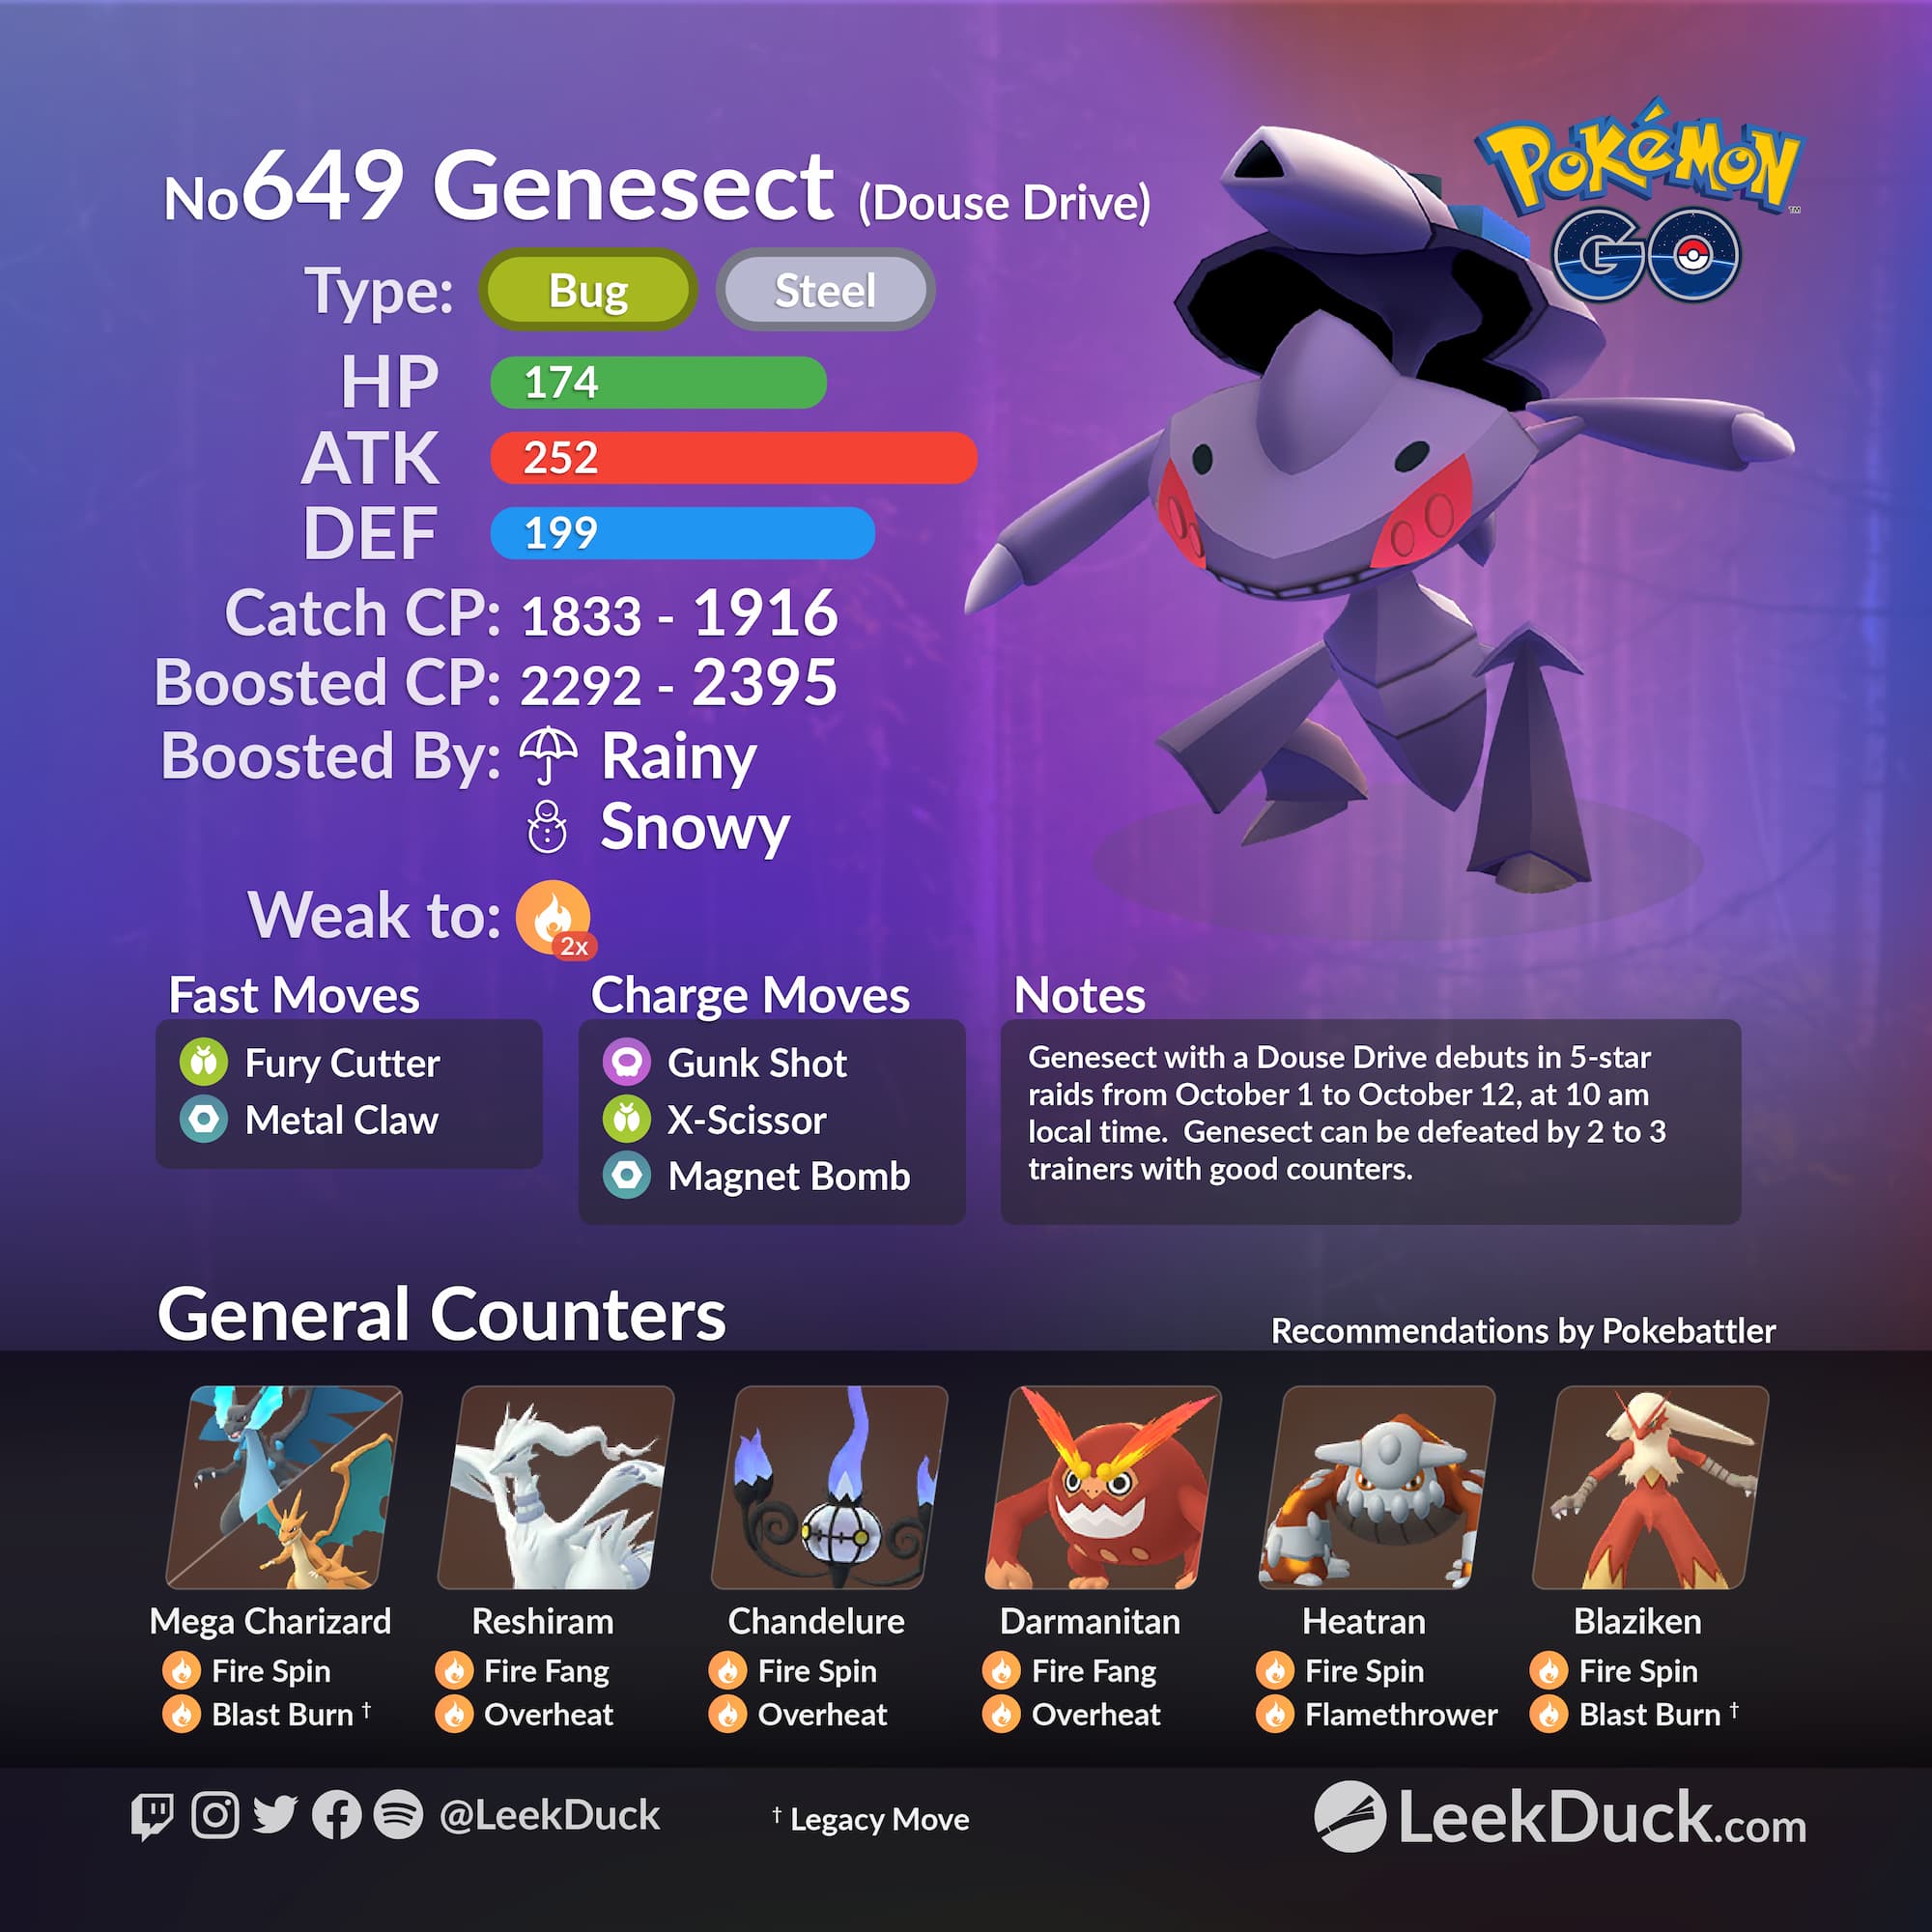 Genesect - Pokemon Go